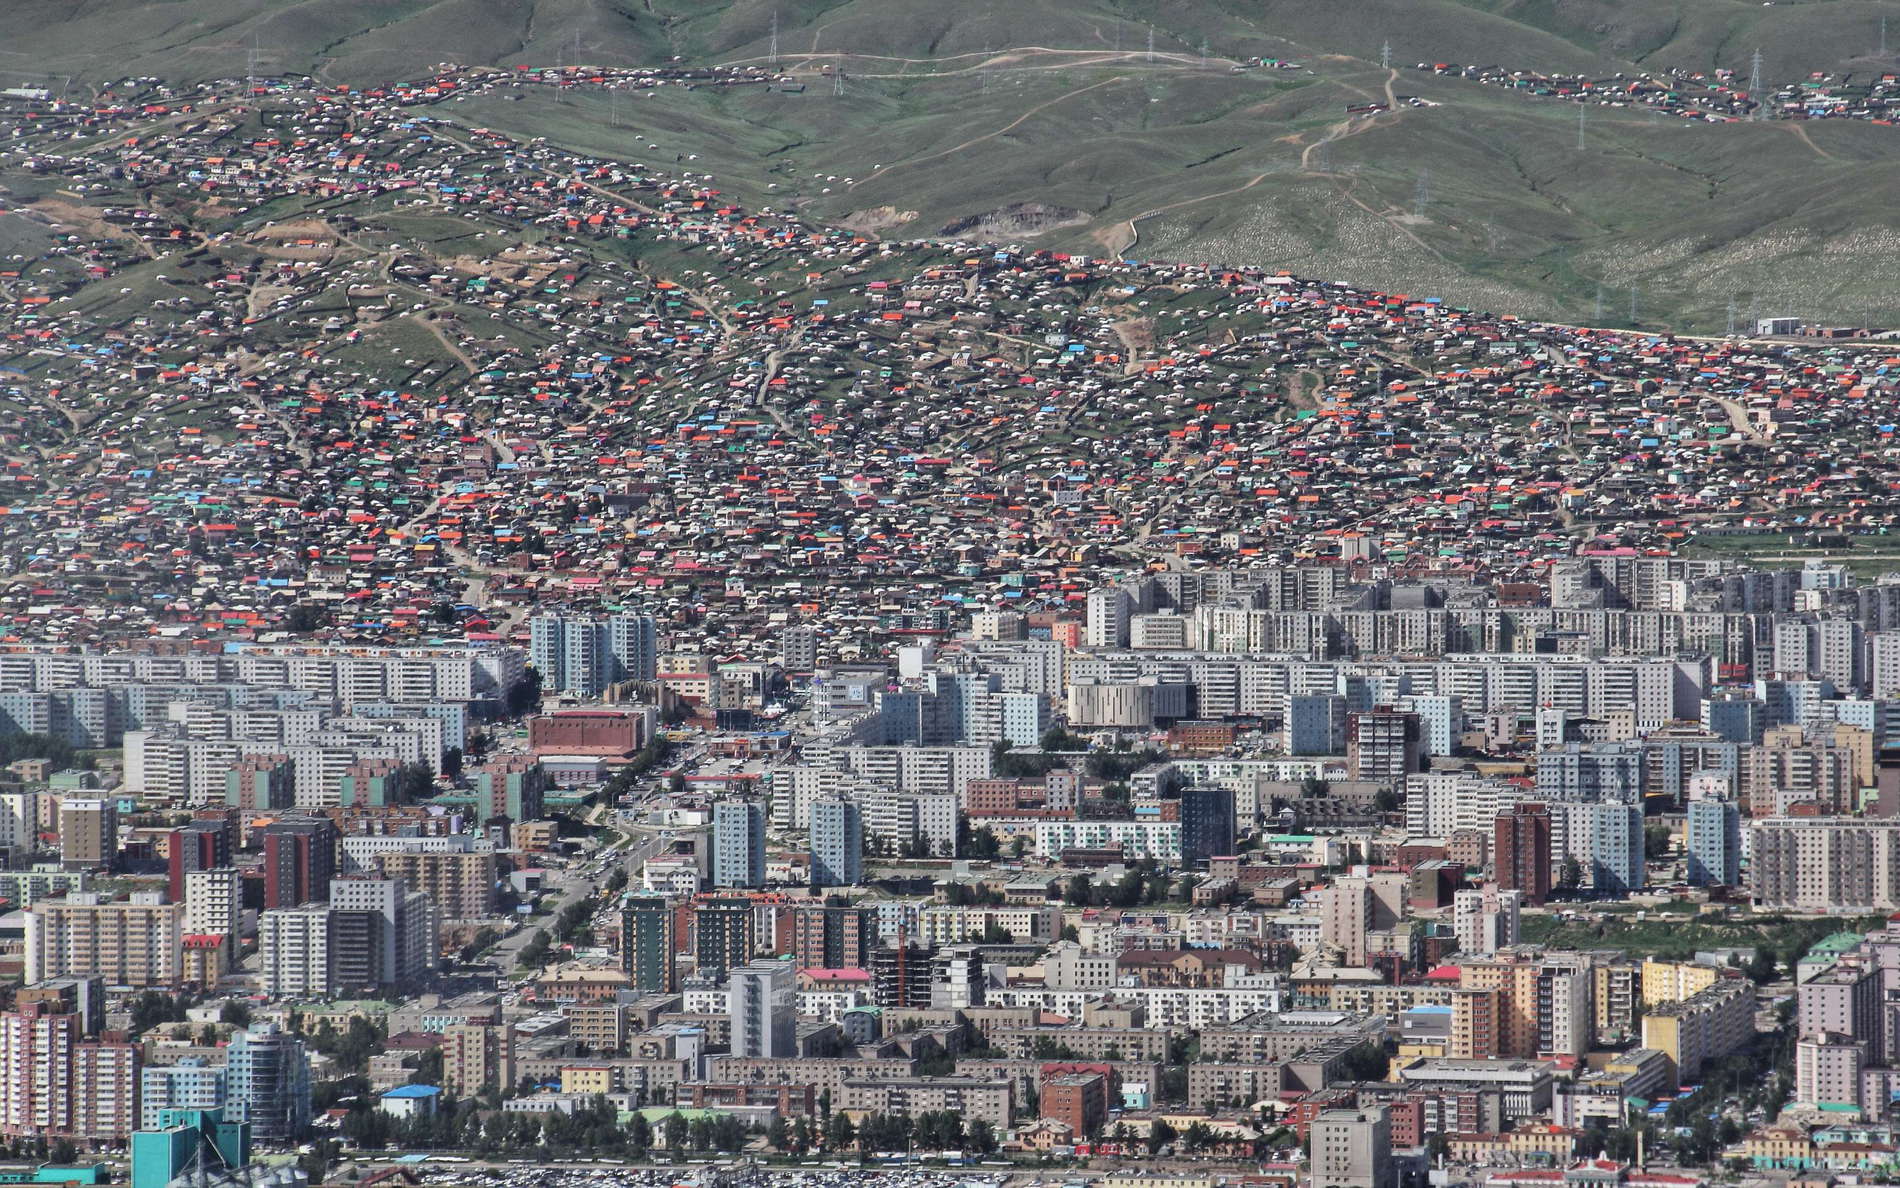 Ulaan Baatar  |  Residential areas